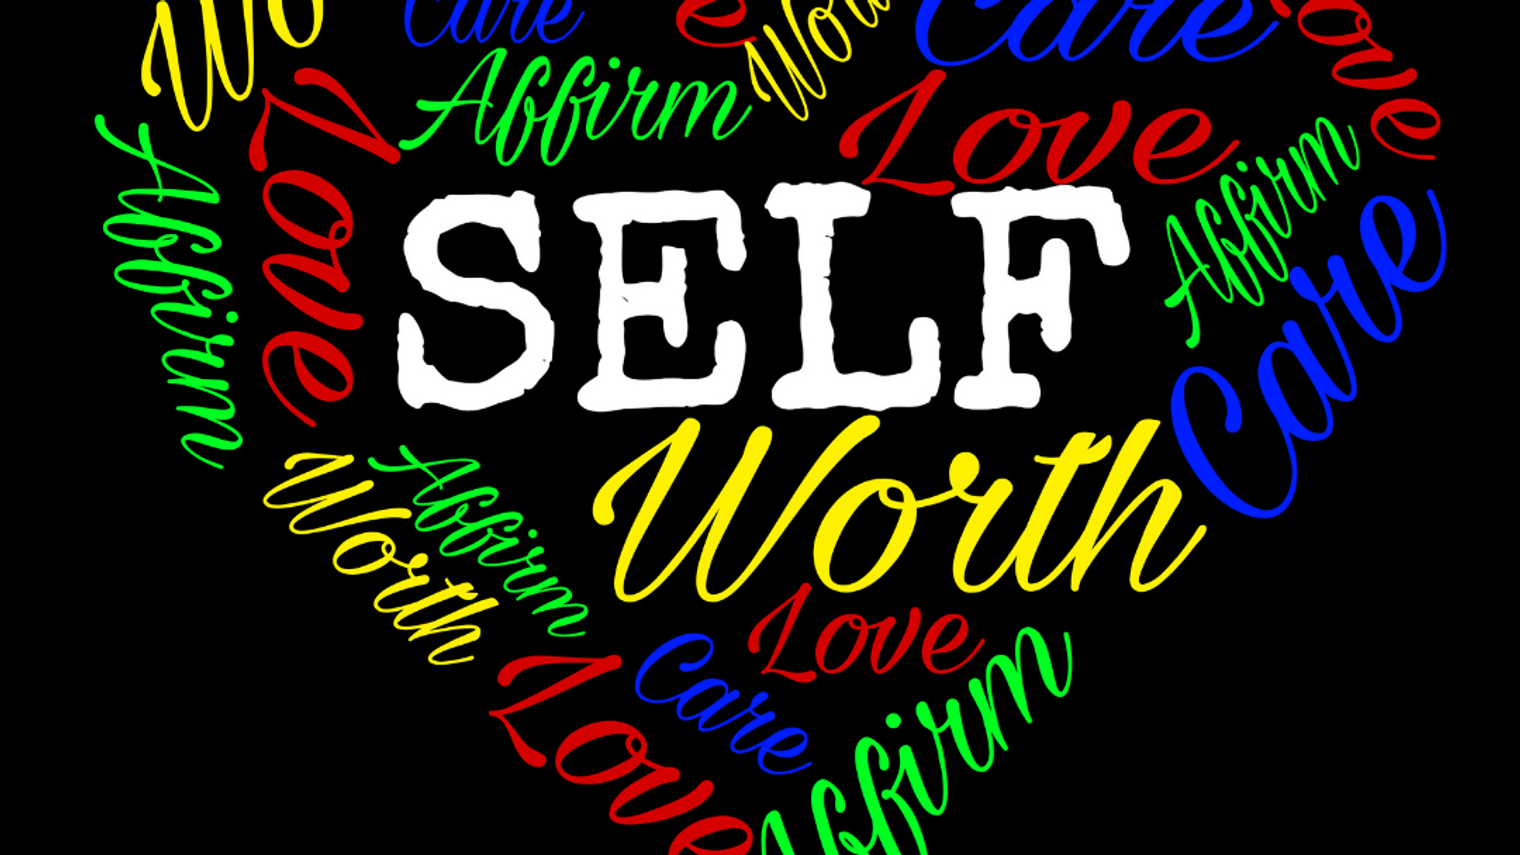 Self Love. Self Care. Self Affirm. Self Worth.